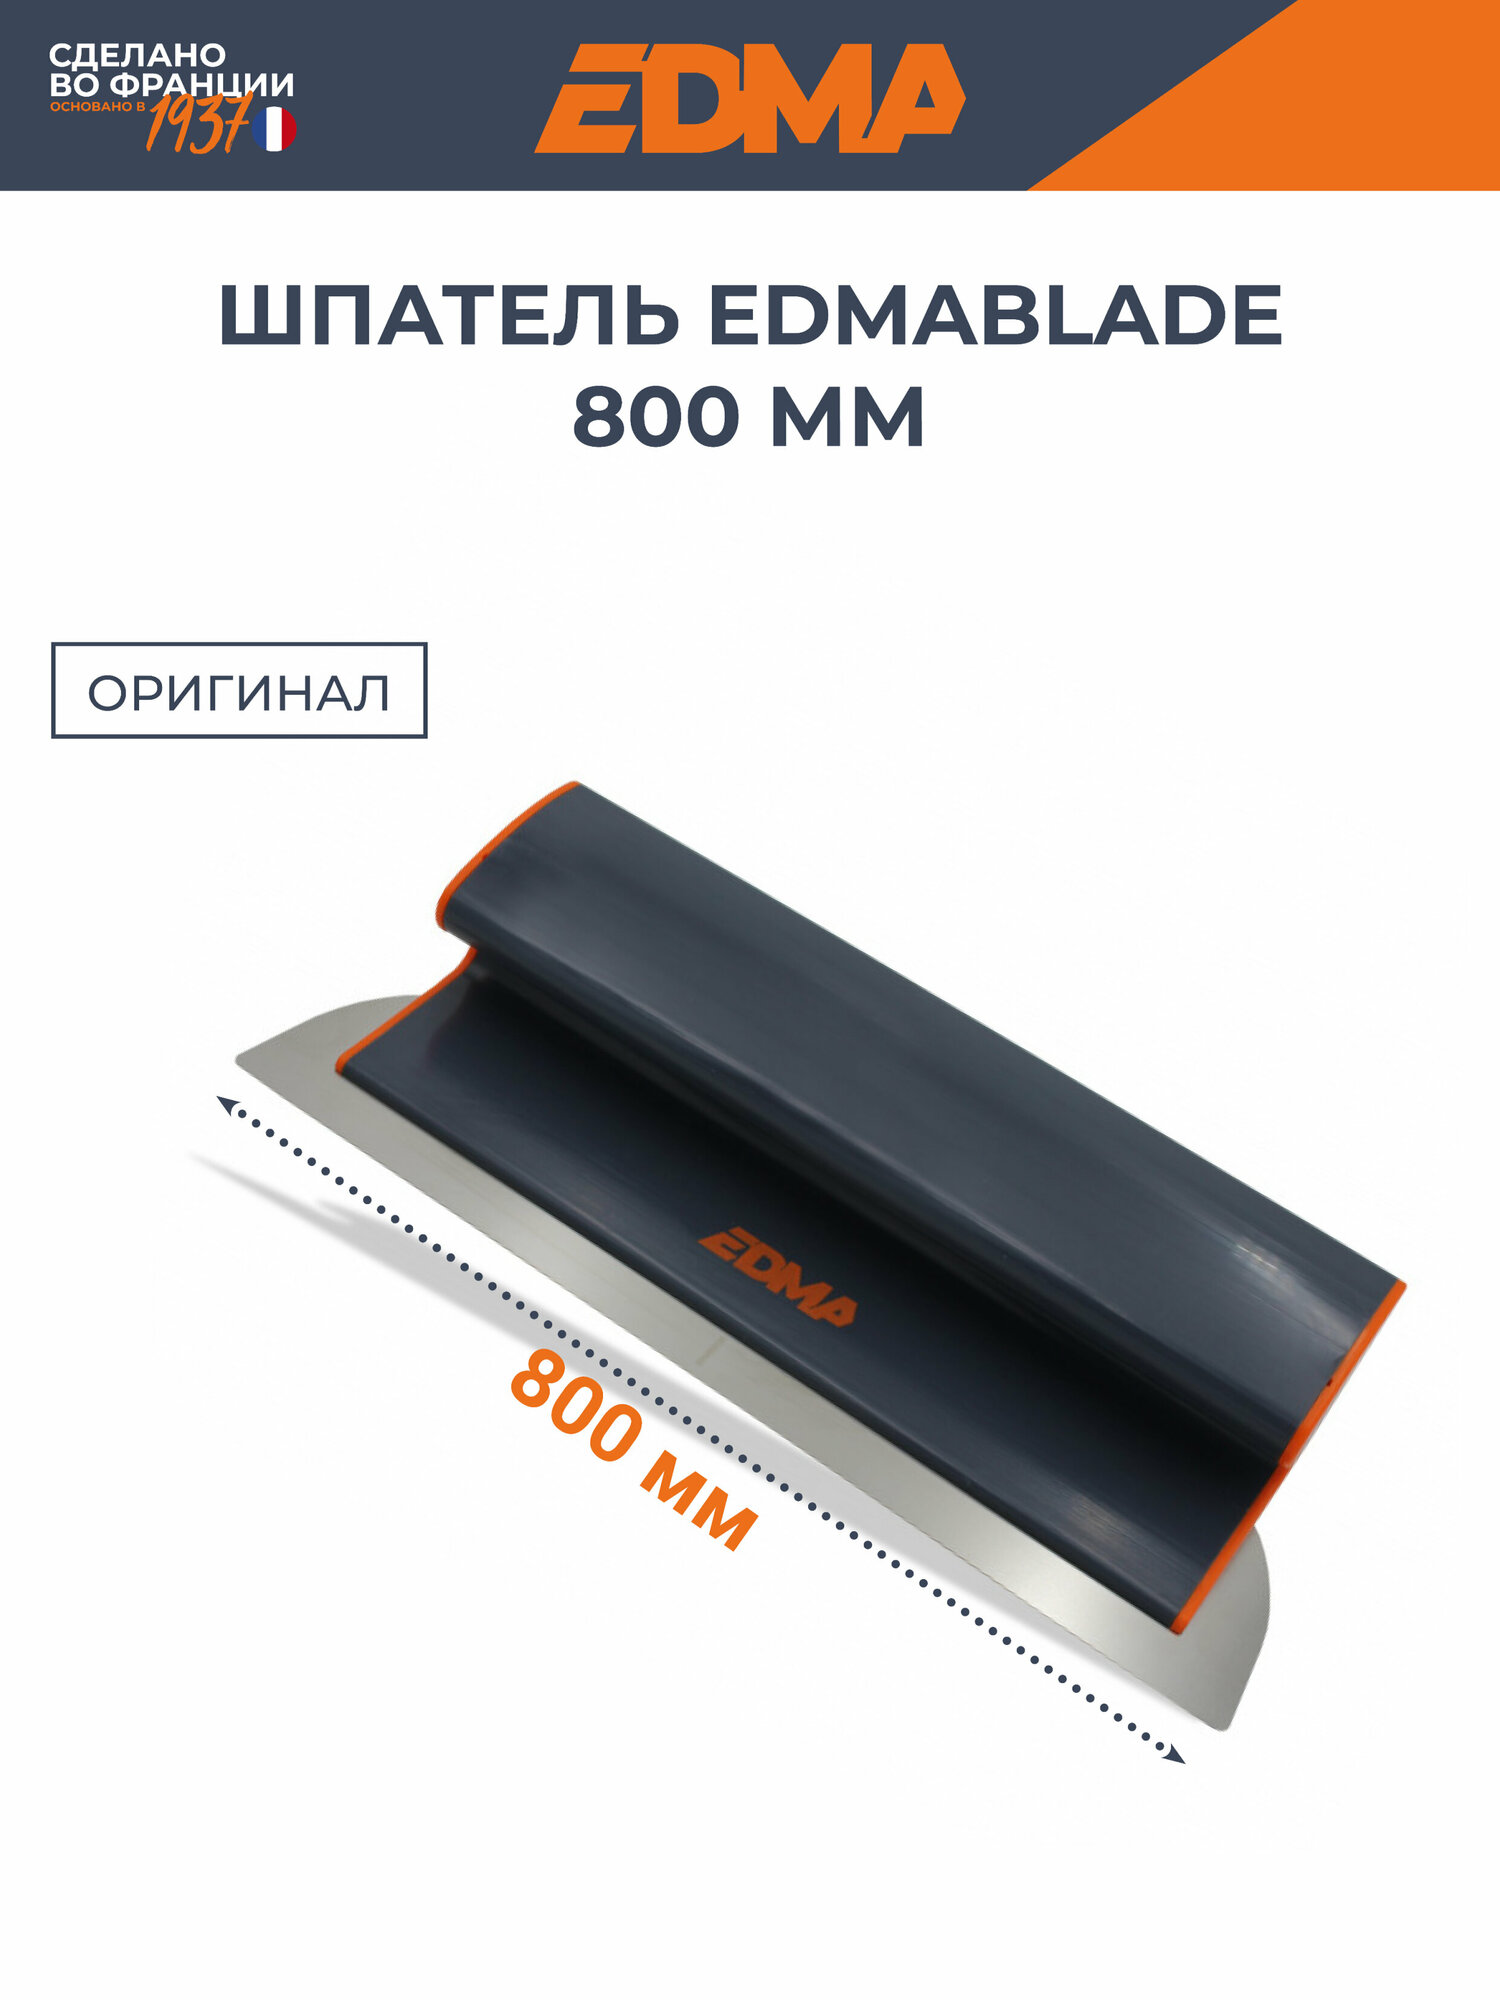 Шпатель EDMA Edmablade 800 мм лезвие 0.5 мм